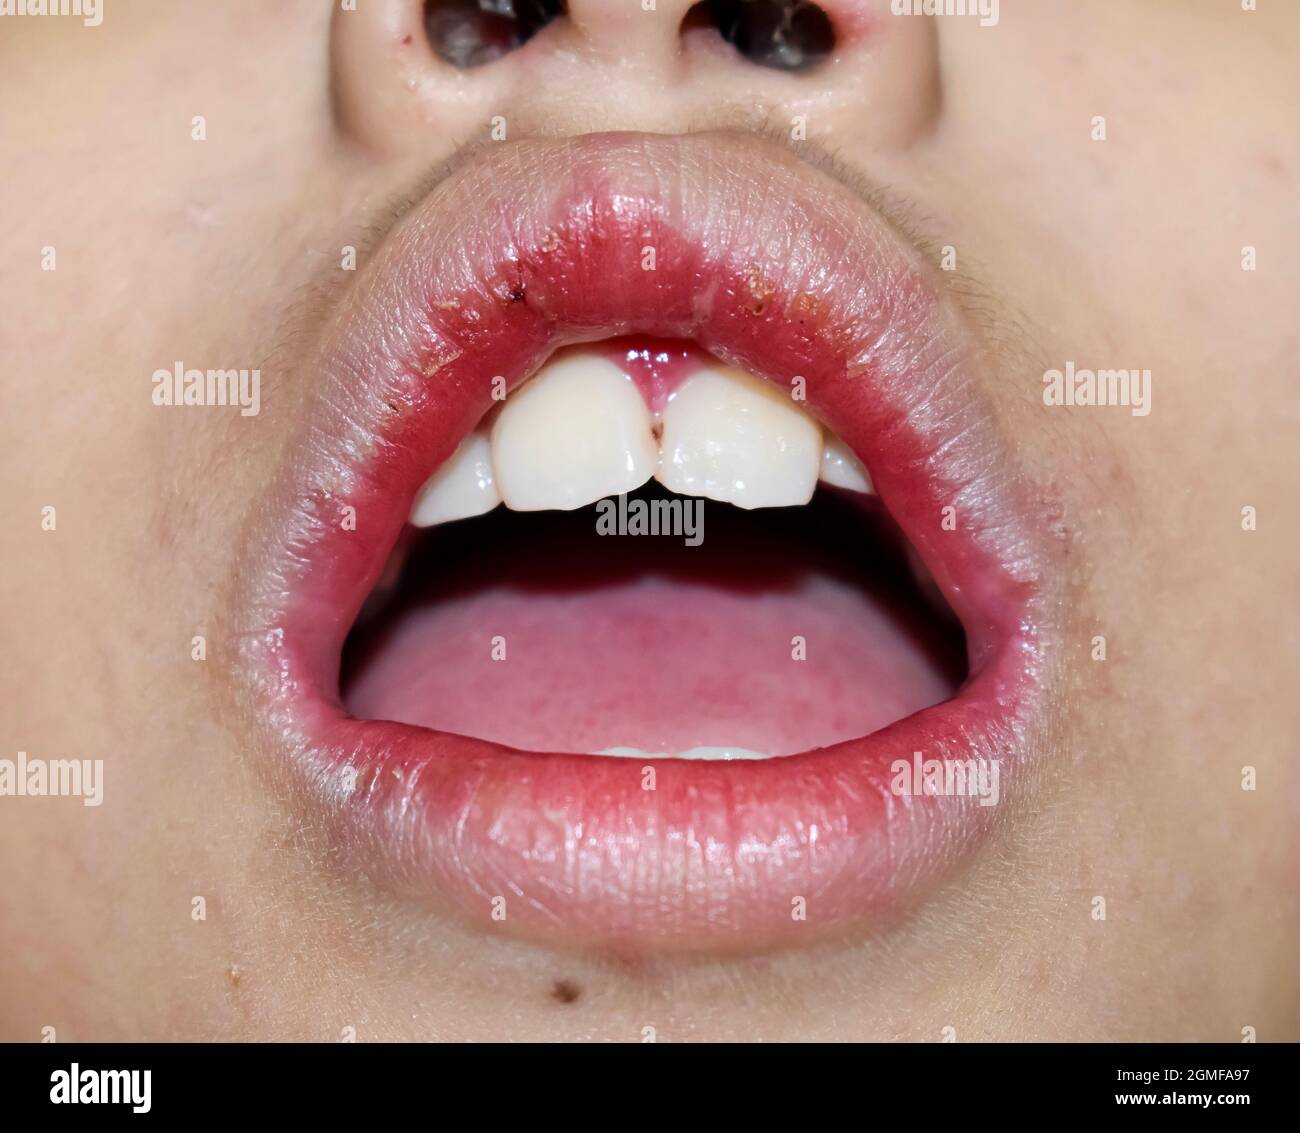 Eckige Stomatitis oder eckige Cheilitis oder Perleche beim asiatischen kleinen Jungen. Häufige entzündliche Erkrankung der Mundwinkel. Trockene Gesichtshaut und Lippen. Stockfoto